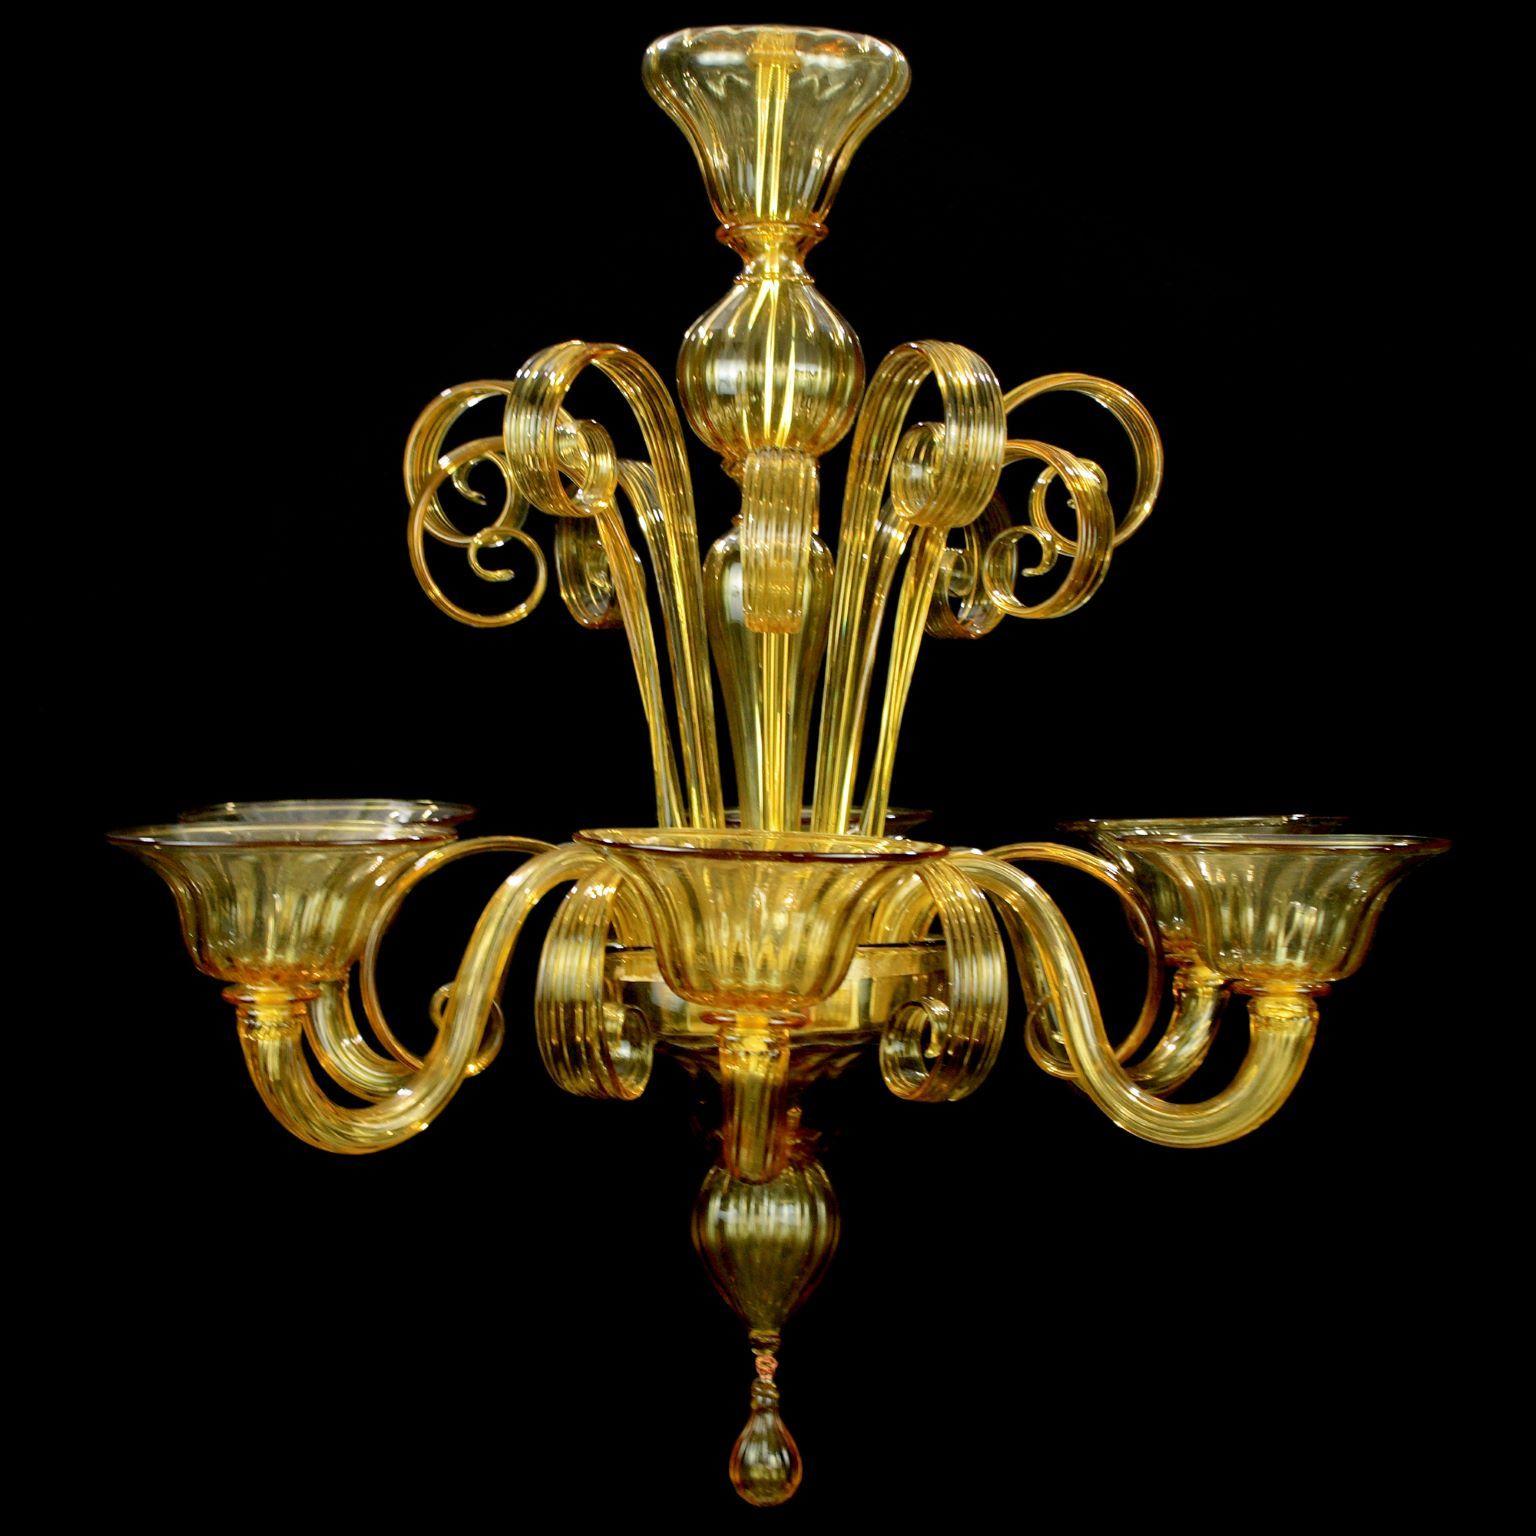 Capriccio von Multiforme ist ein 6-flammiger Kronleuchter aus Akazien-Kunstglas mit geschwungenen Ornamenten.
Es ist von der klassischen venezianischen Tradition inspiriert und zeichnet sich durch eine zentrale Säule aus, in der viele 